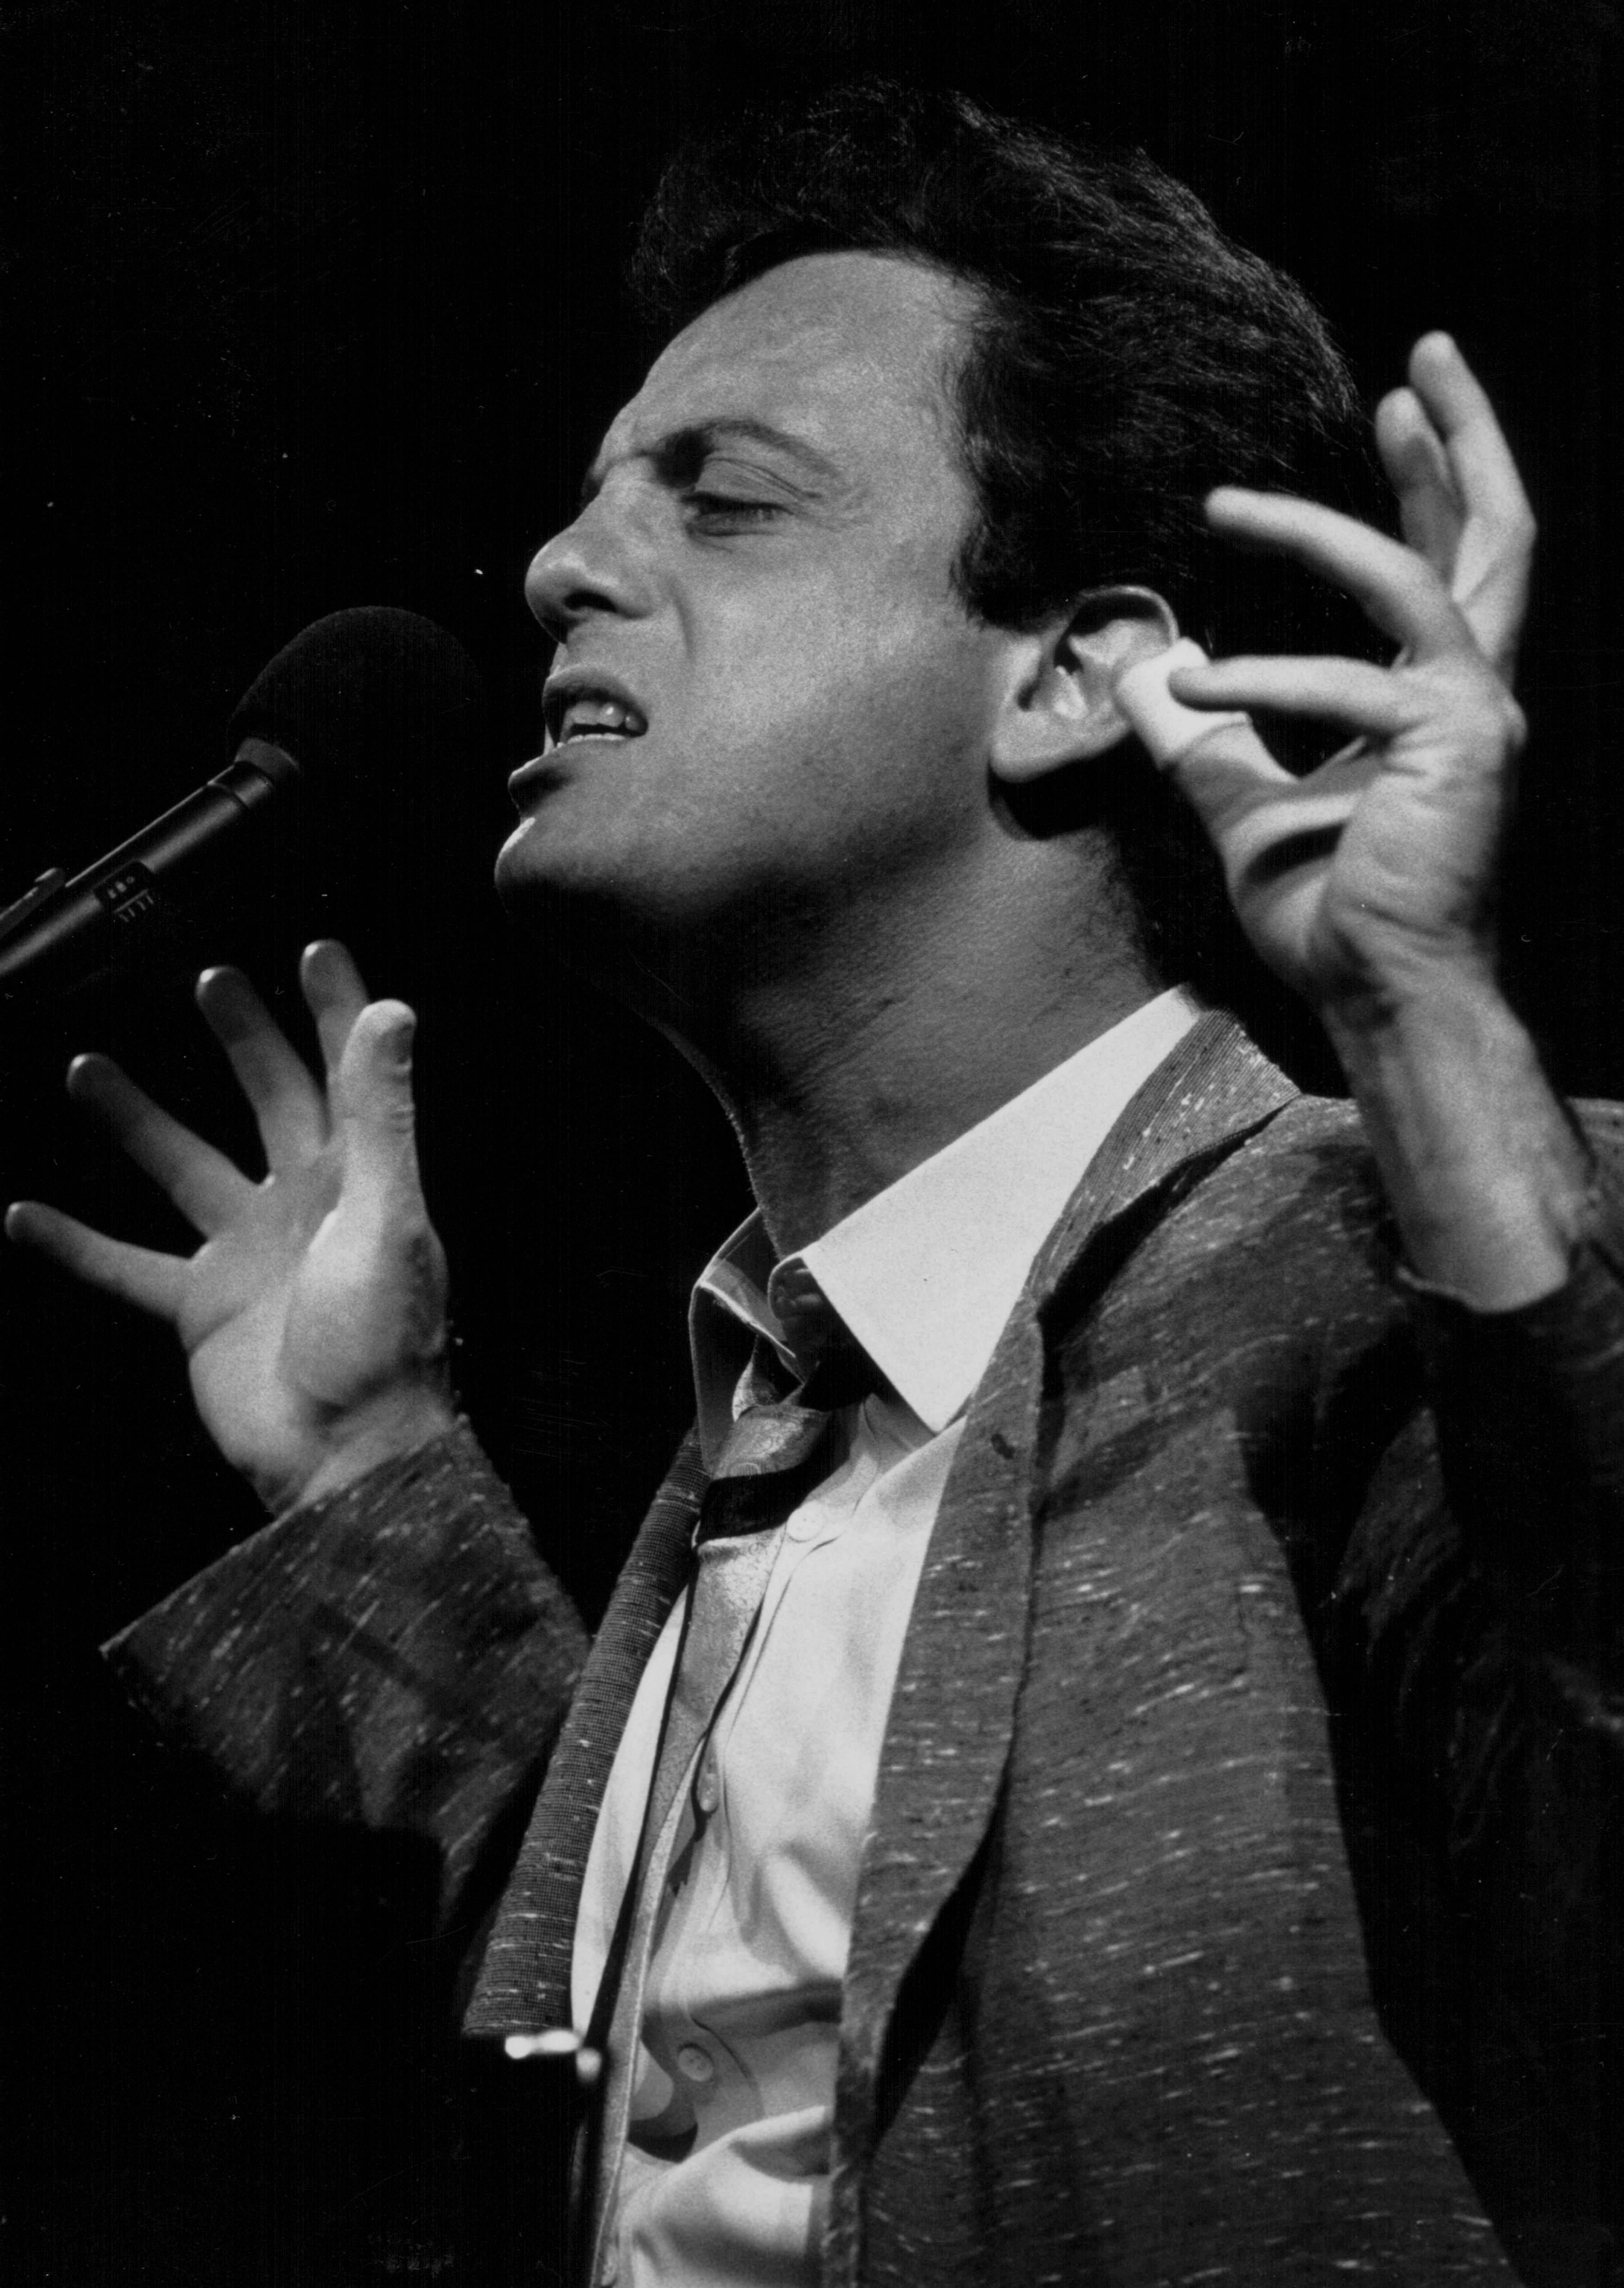 Billy Joel en el escenario, circa 1980-1990 | Foto: Getty Images